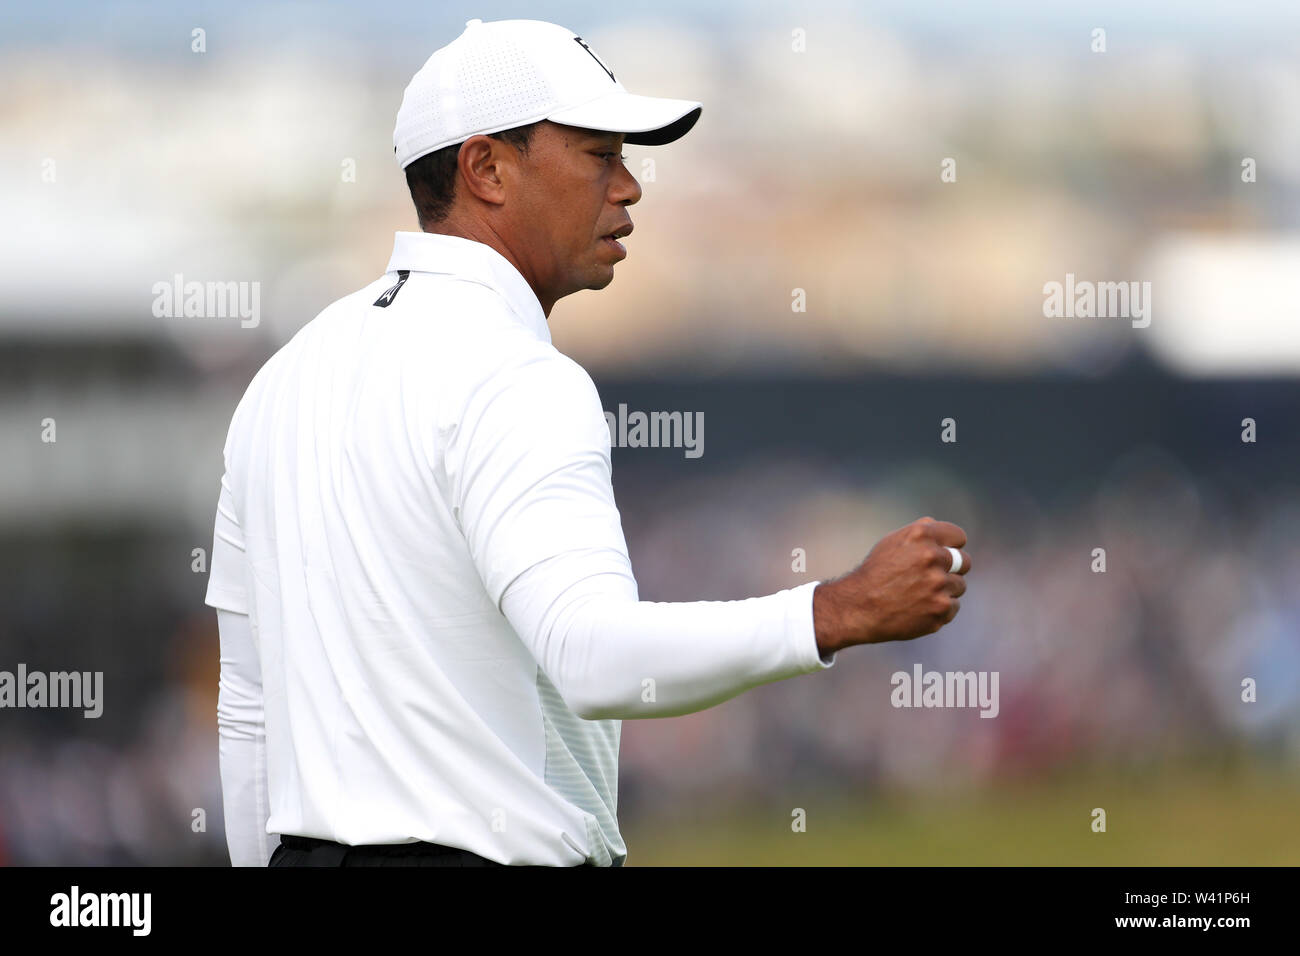 USA's Tiger Woods célèbre un birdie au 1er verte pendant la deuxième journée de l'Open Championship 2019 au Club de golf Royal Portrush. Banque D'Images